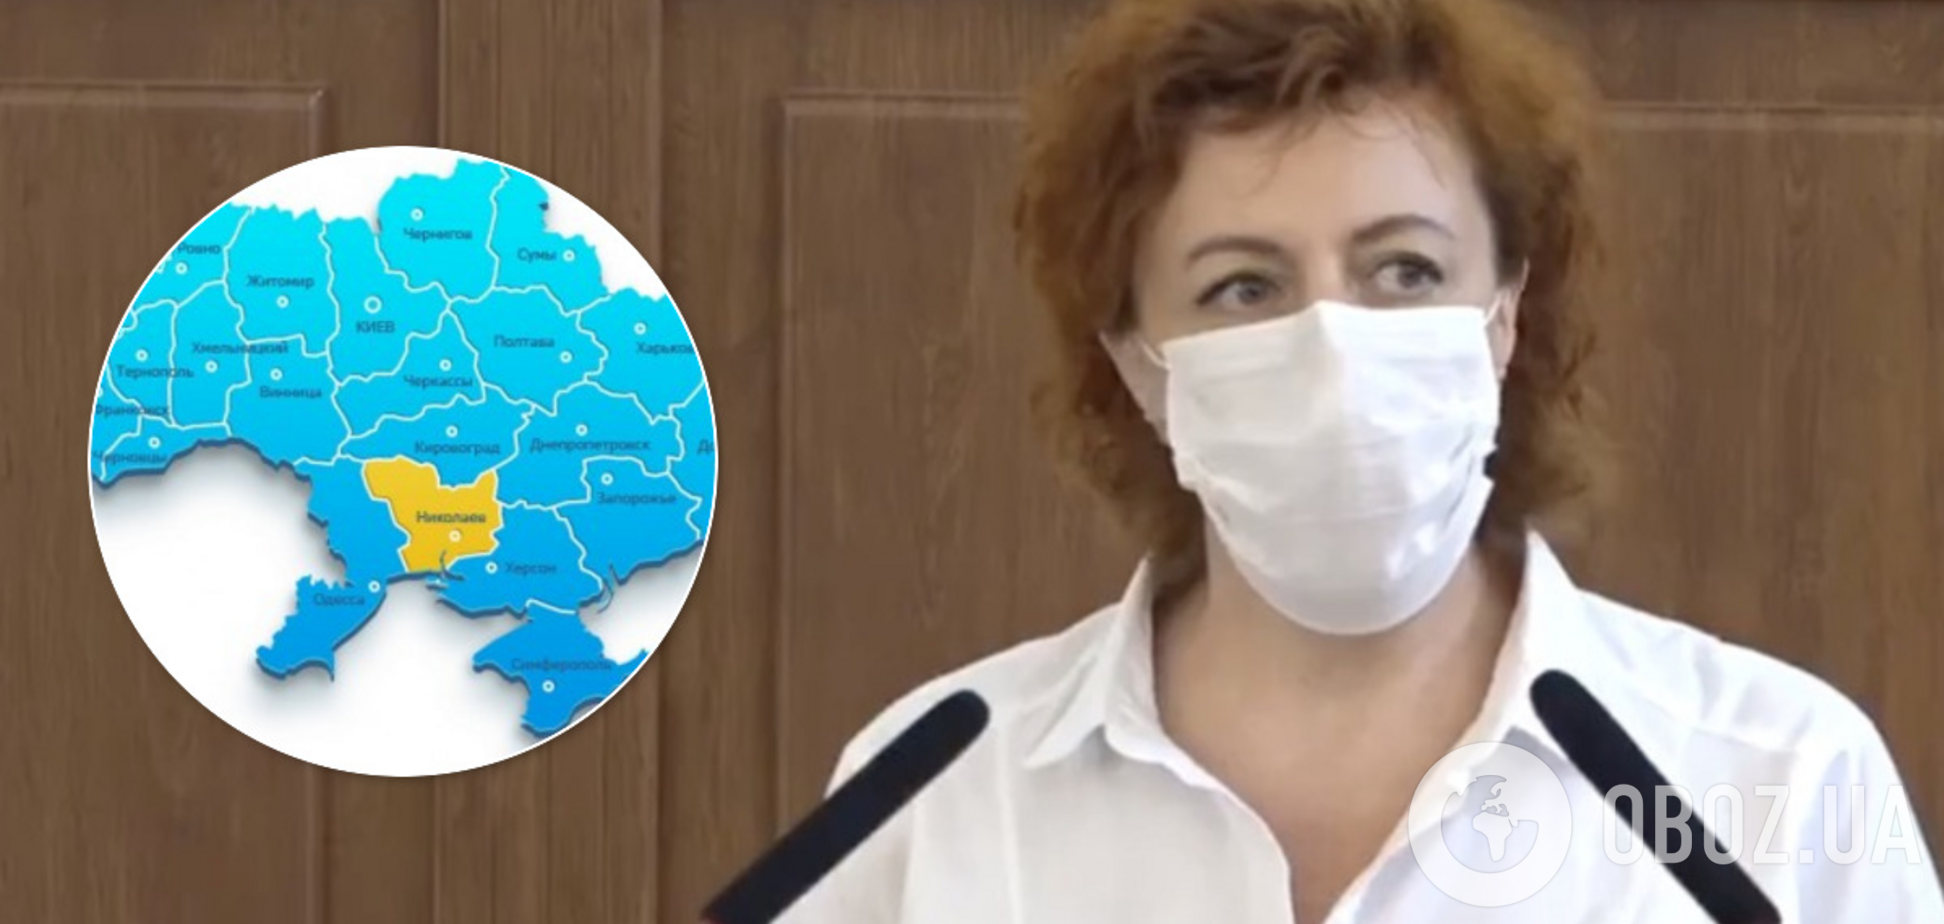 В области без COVID-19 вспышка пневмонии: число больных украинцев увеличилось в 18 раз